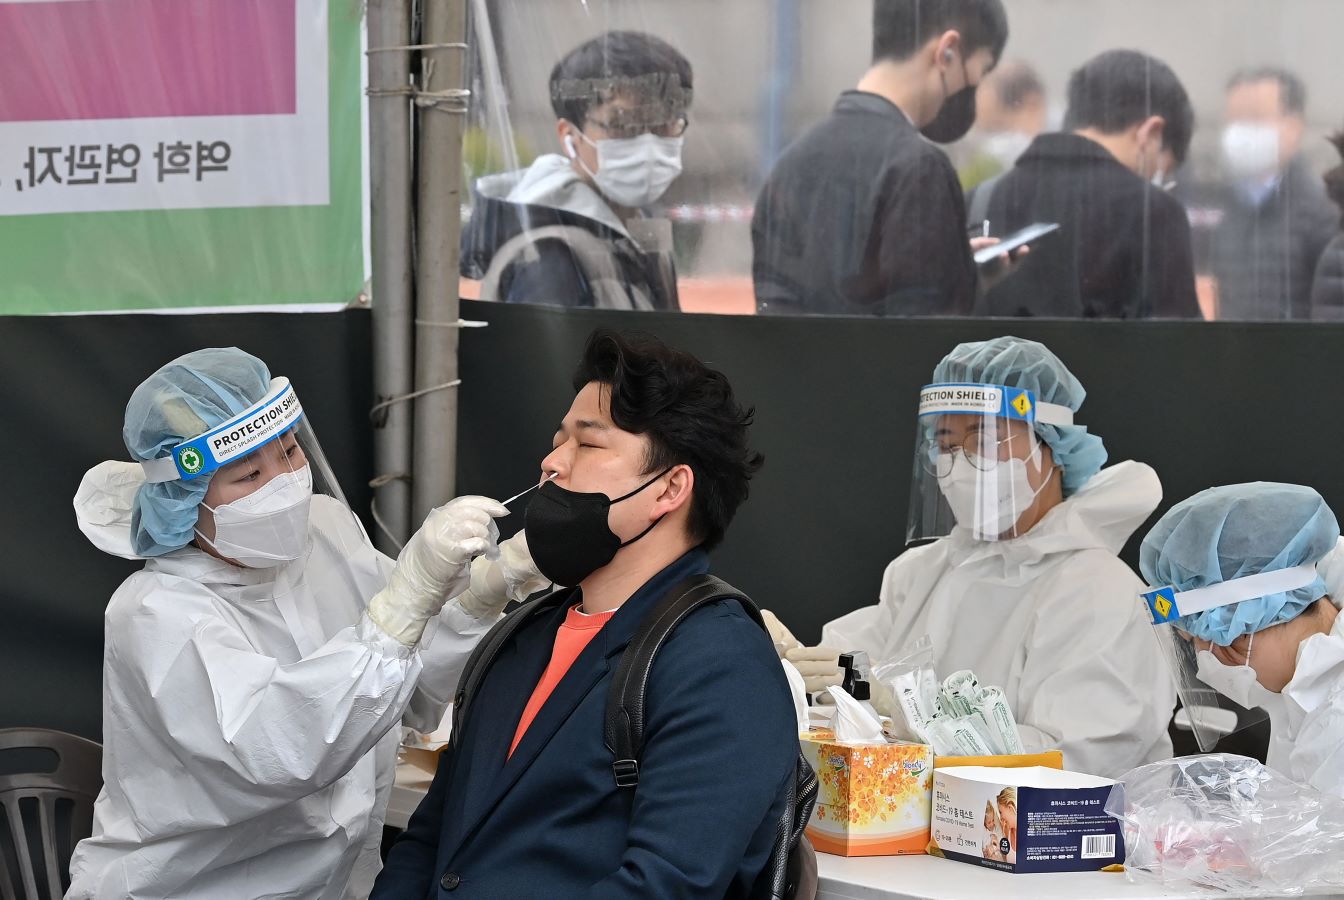 كوريا الجنوبية تسجل أقل من 70 ألف إصابة جديدة بكورونا